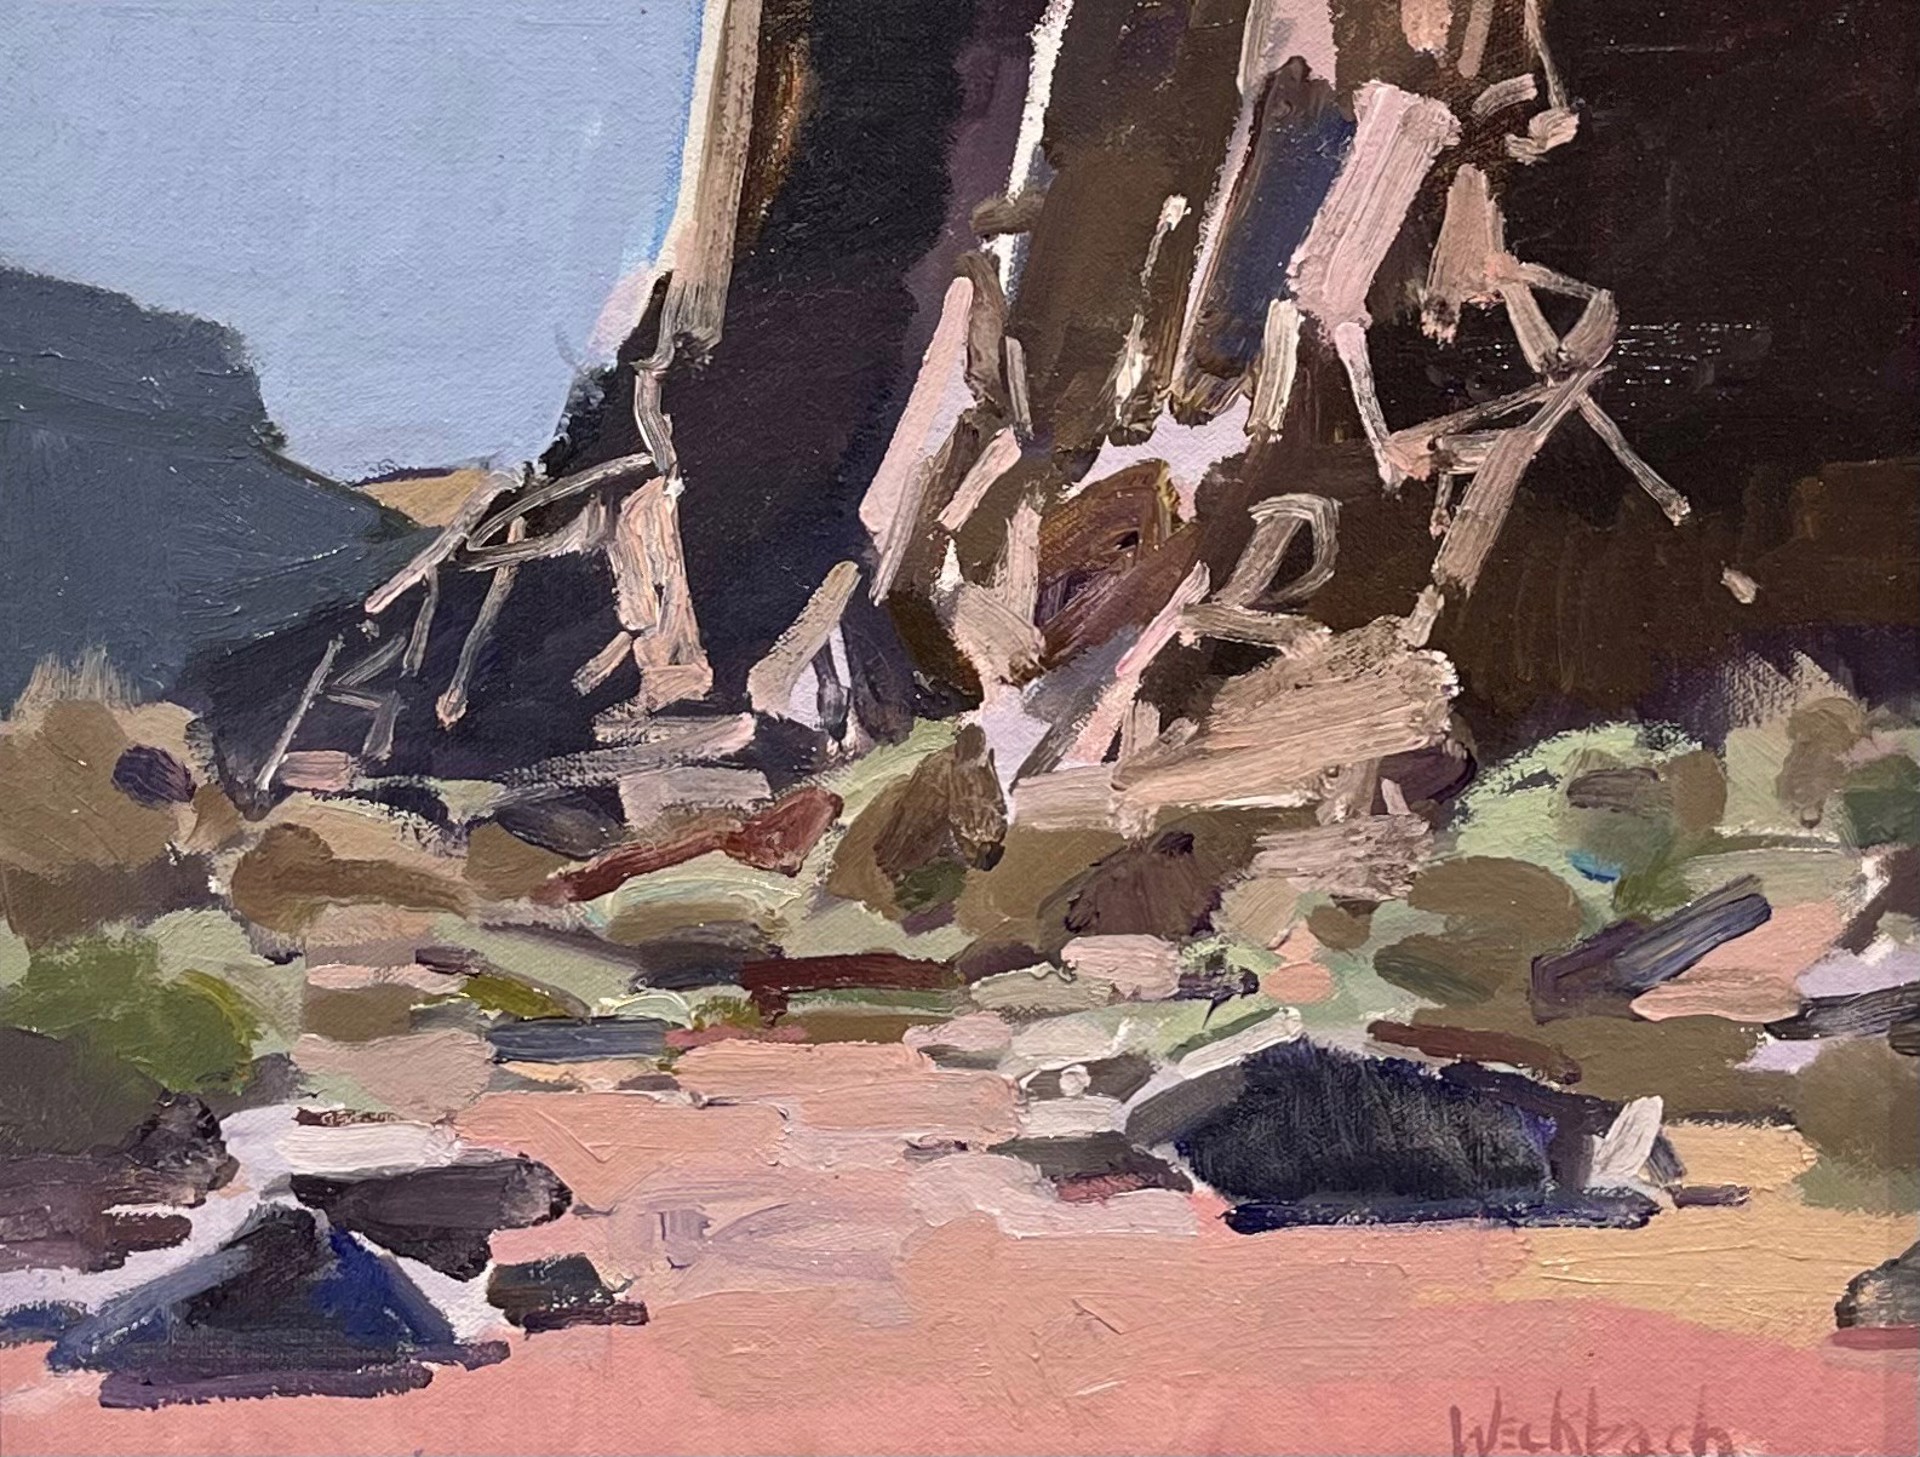 Diablo Canyon by Kevin Weckbach